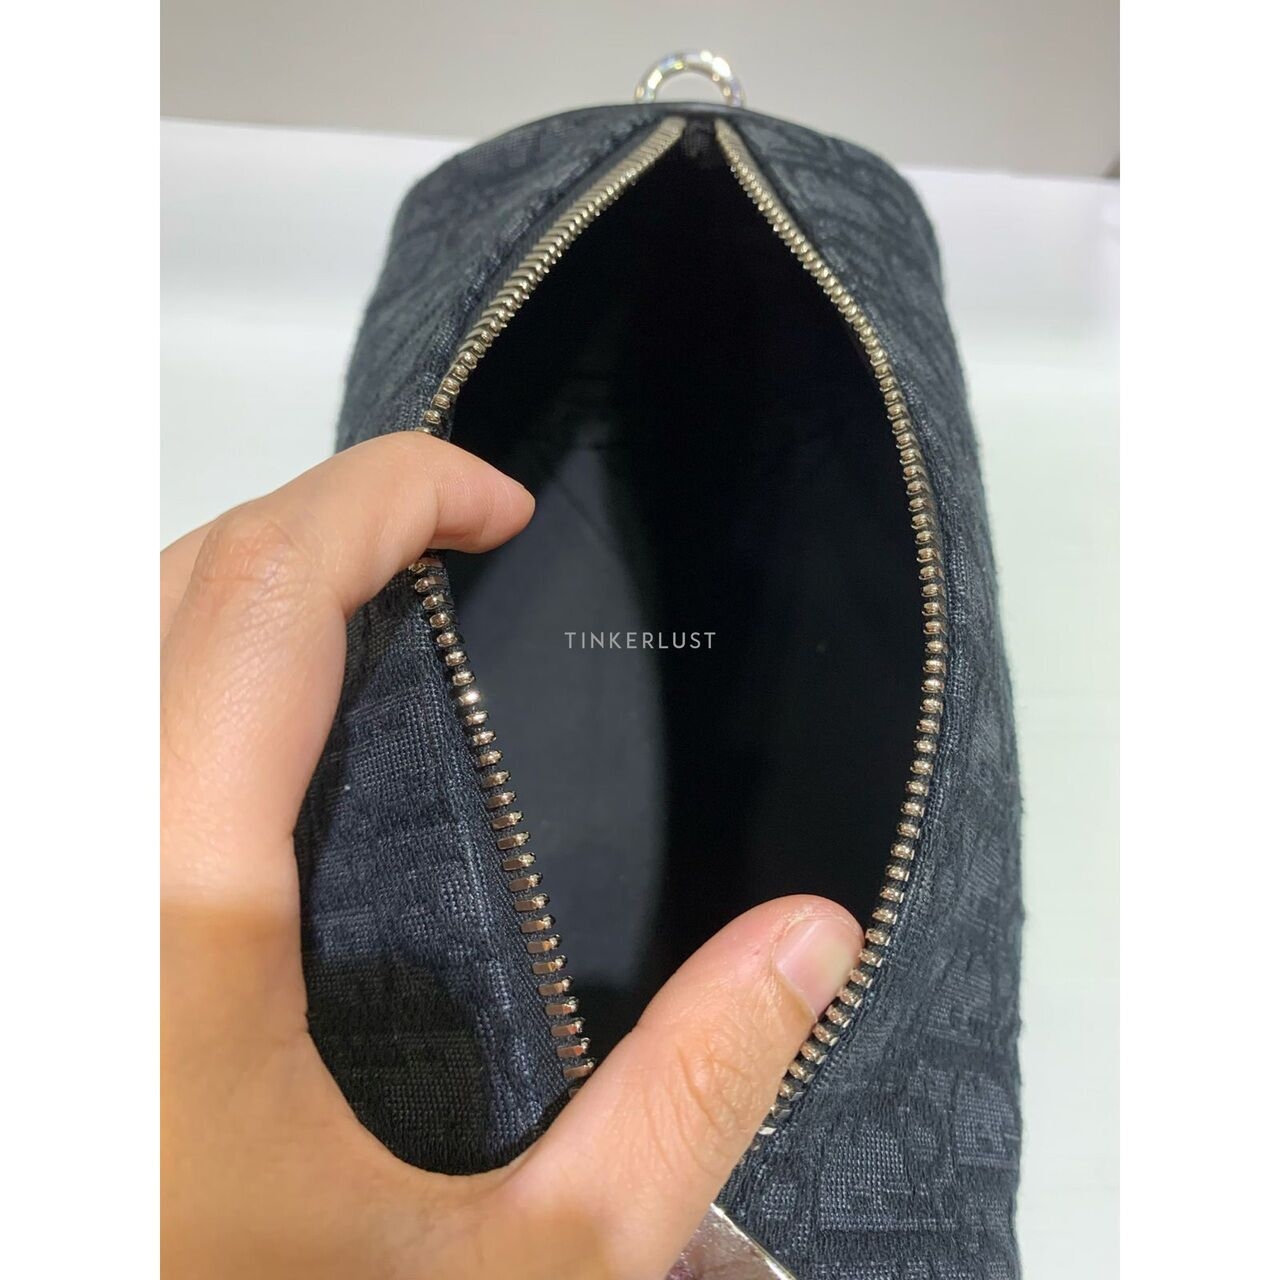 Christian Dior Roller Oblique Black SHW 2022 Sling Bag